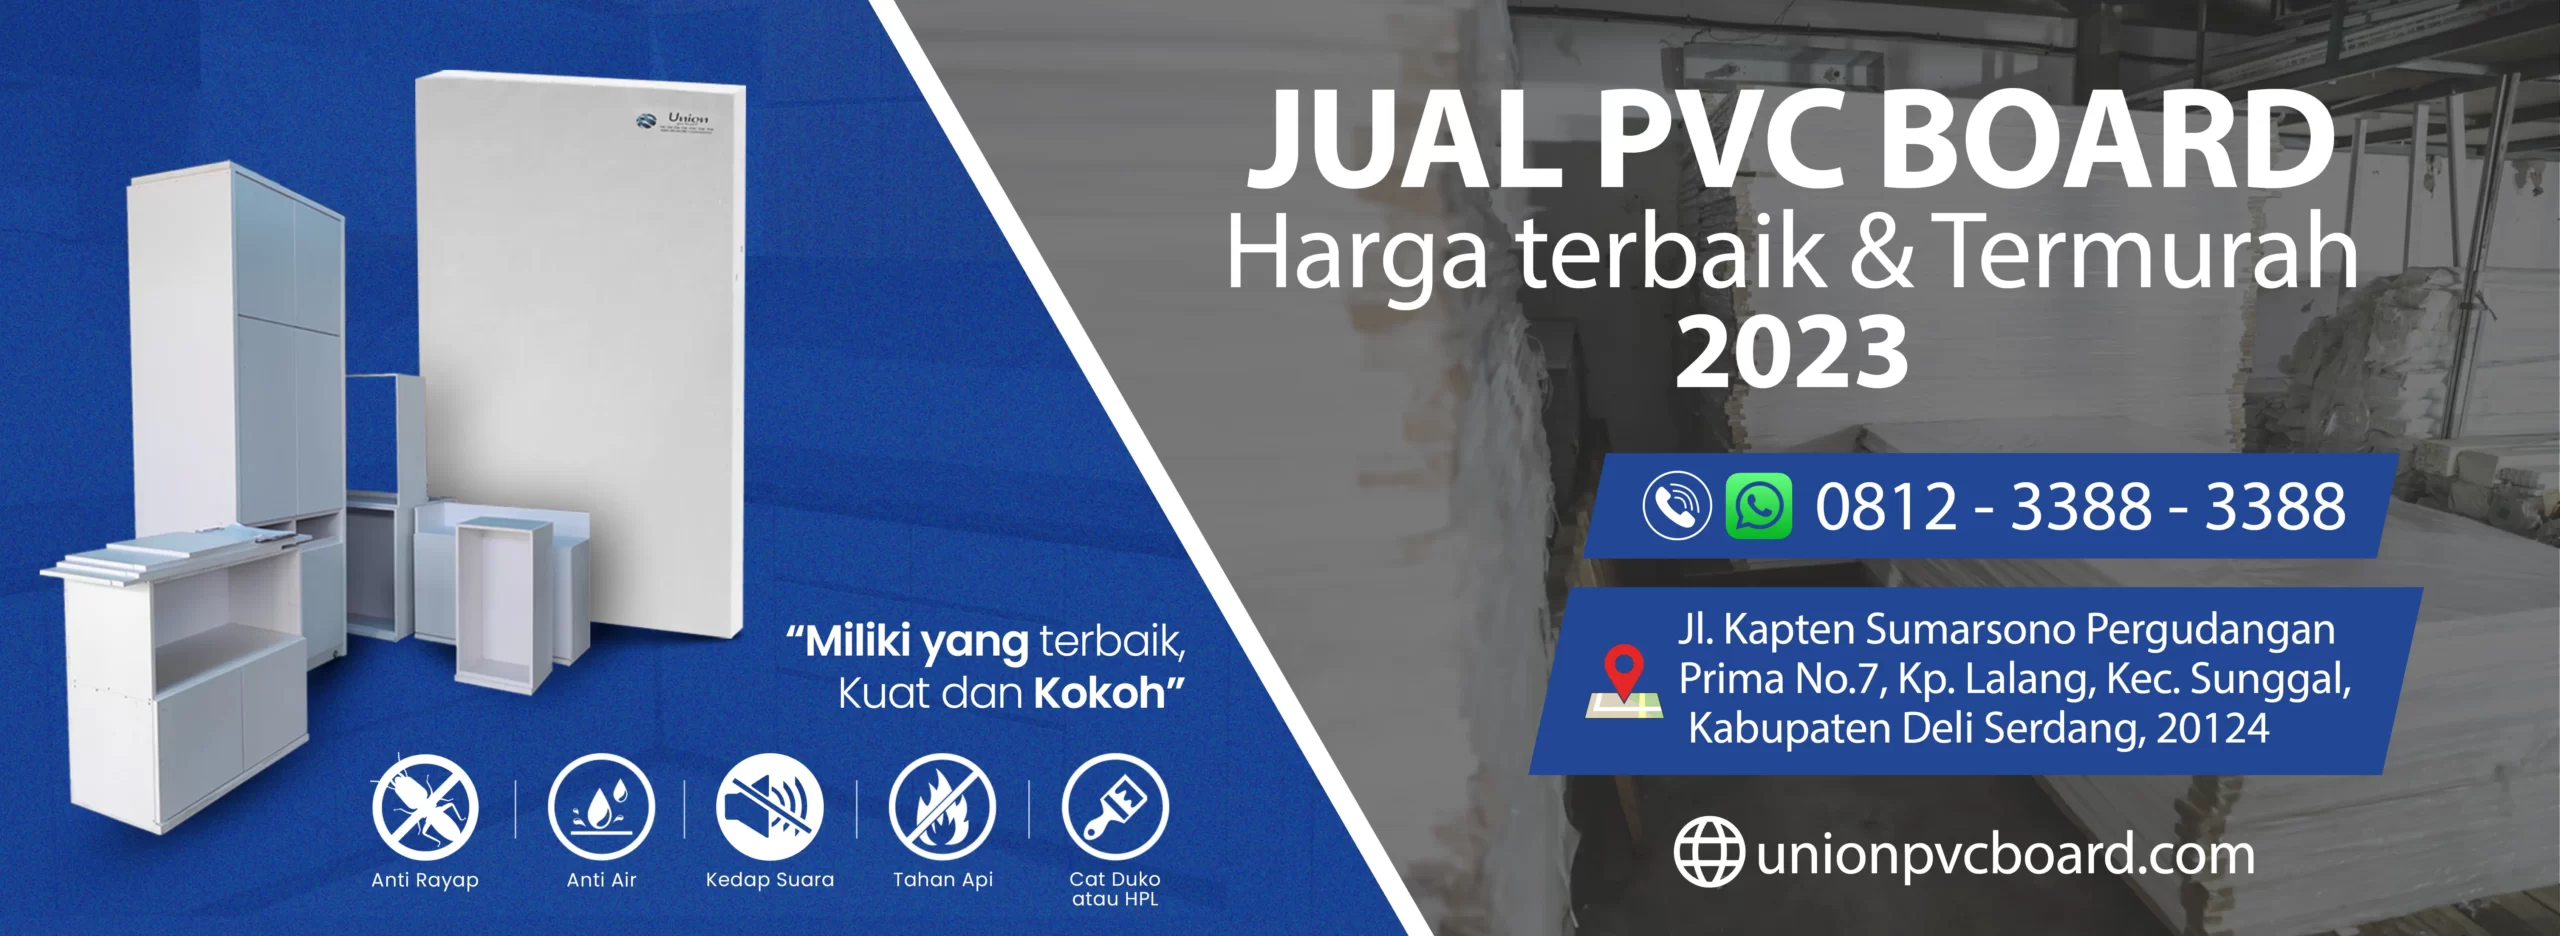 Jual PVC BOARD Harga Terbaik & Termurah 2023